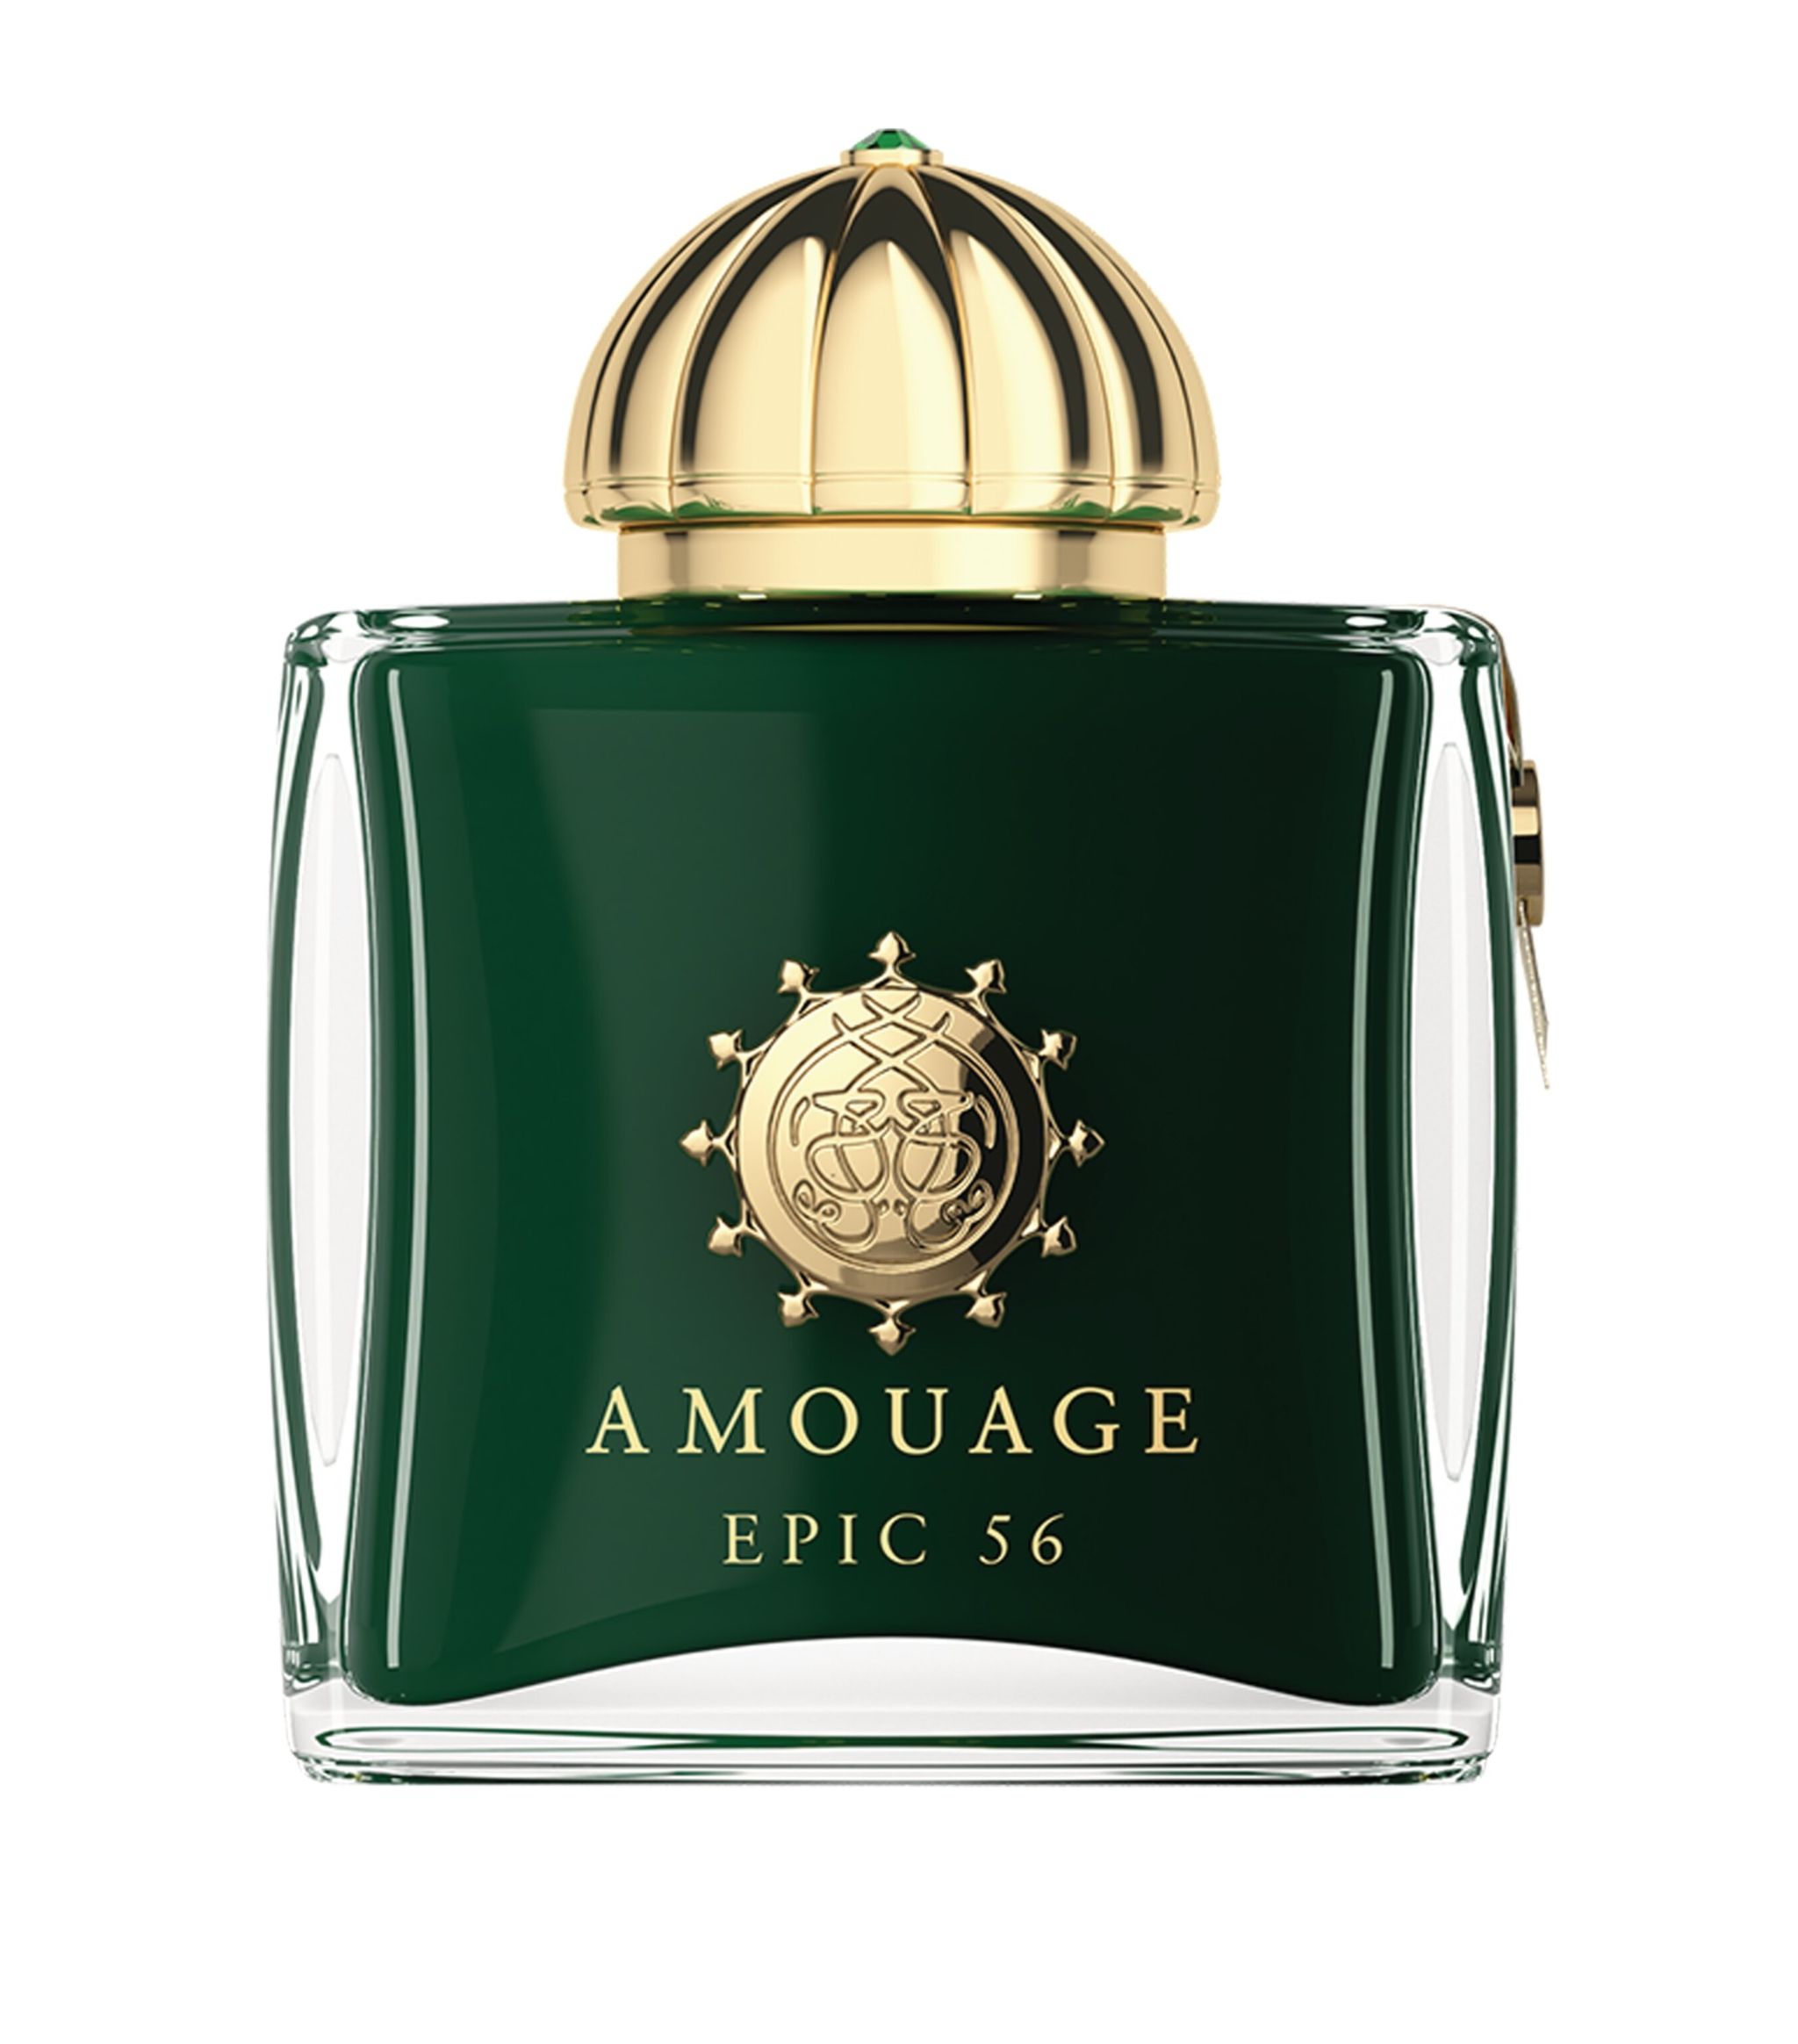 Amouage Epic 56 Woman extrait 10 ml NIŠINIAI kvepalų mėginukas (atomaizeris) Moterims Parfum